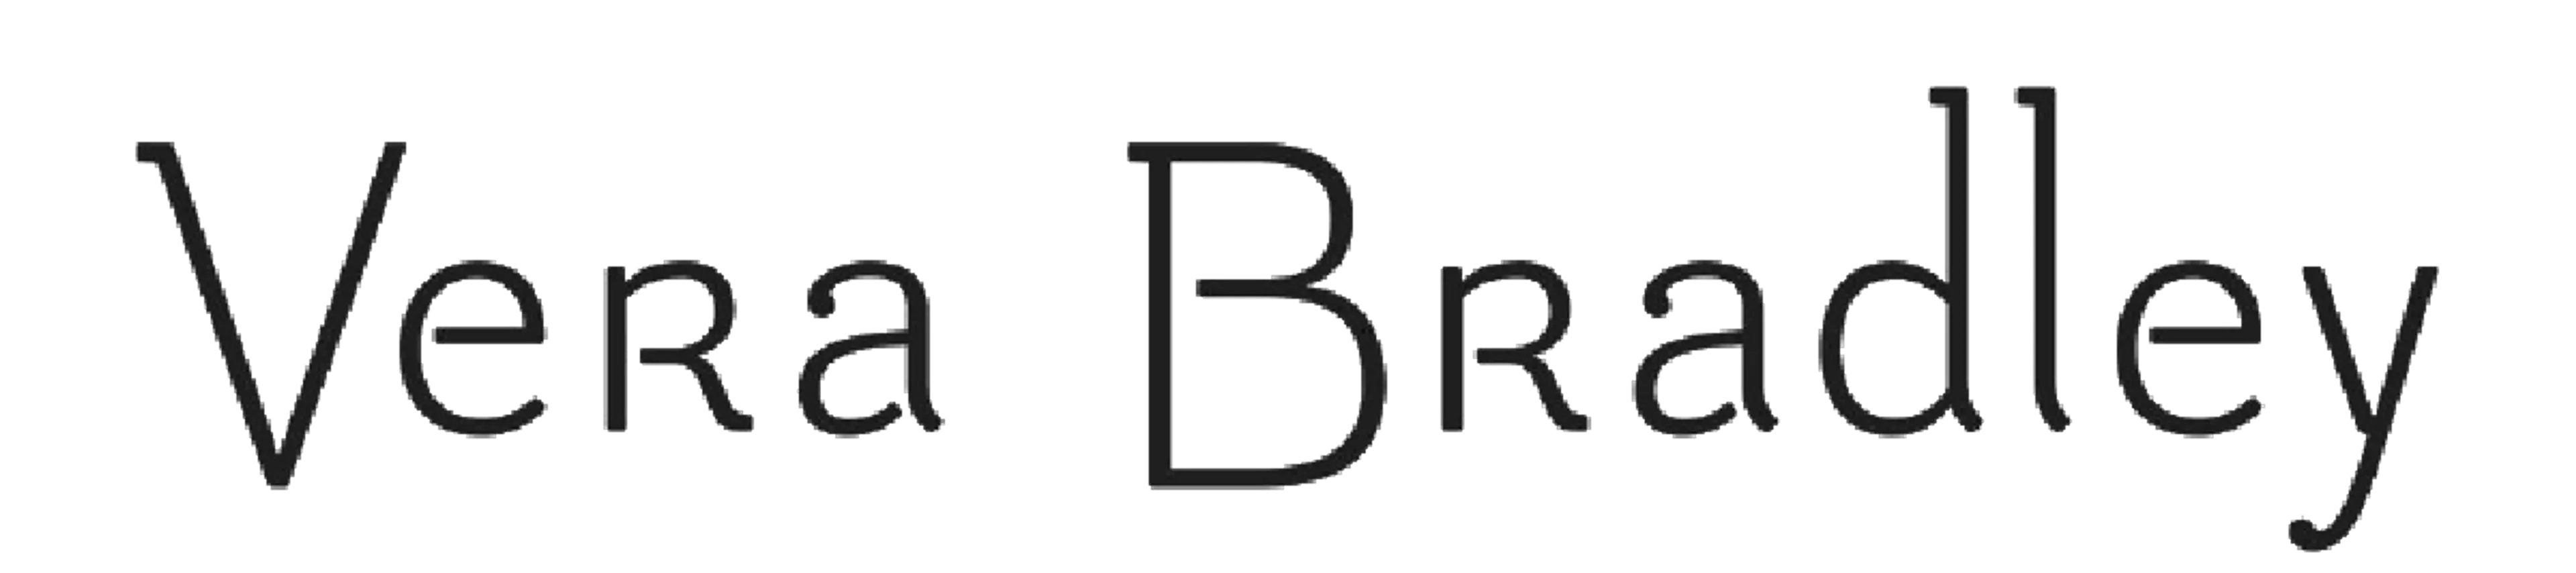 VERA BRADLEY logo